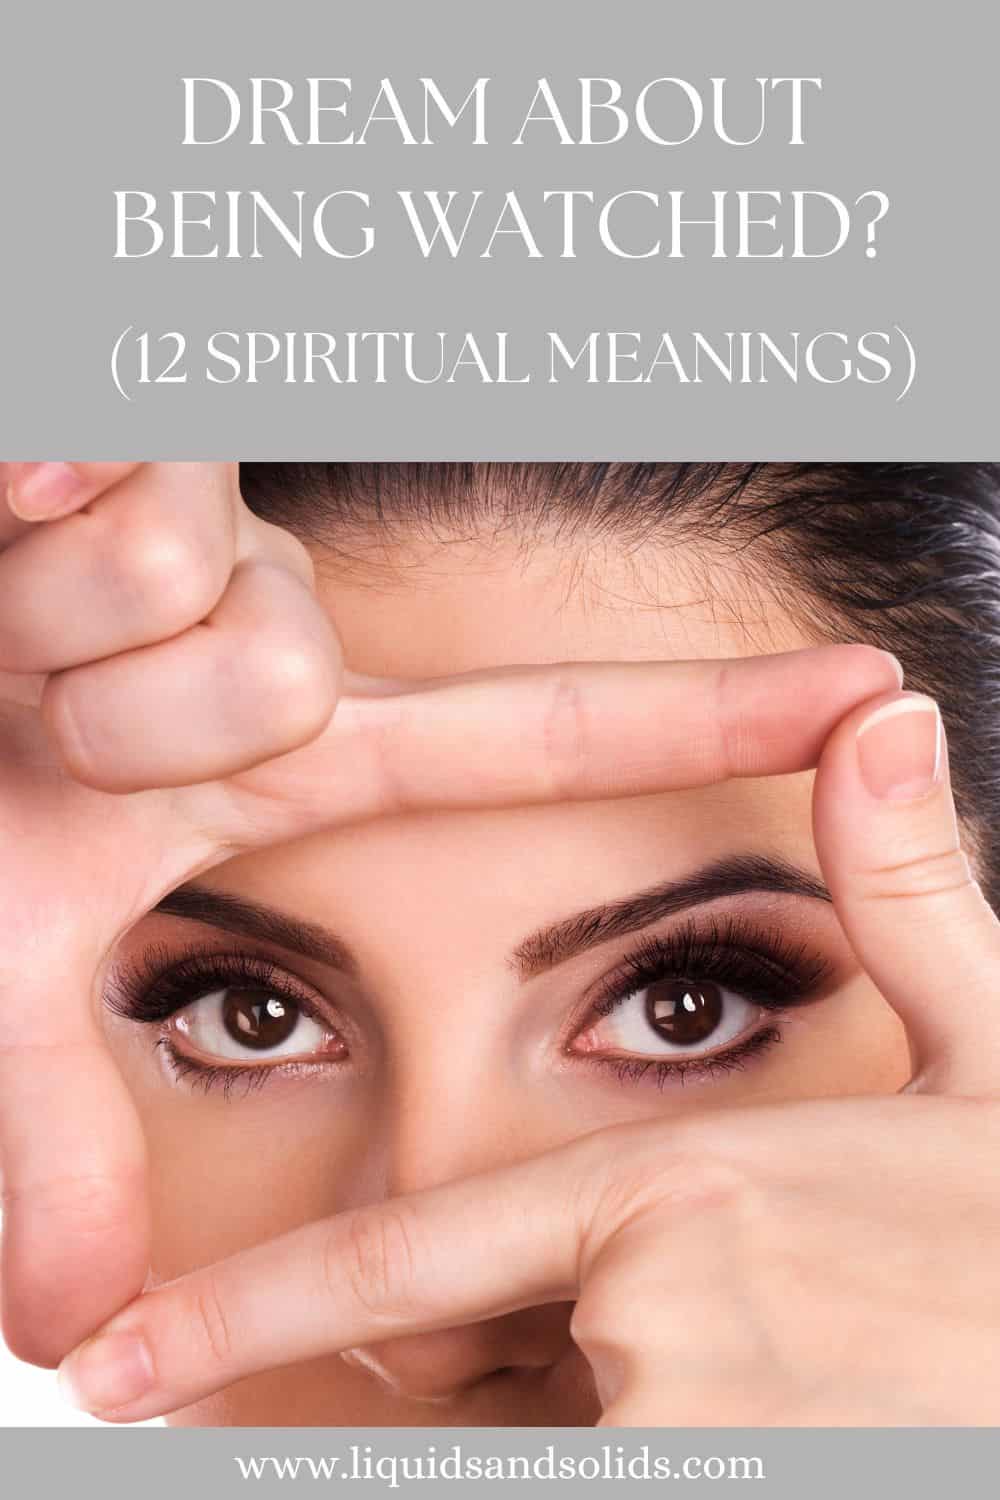  Drøm om at blive overvåget? (12 spirituelle betydninger)